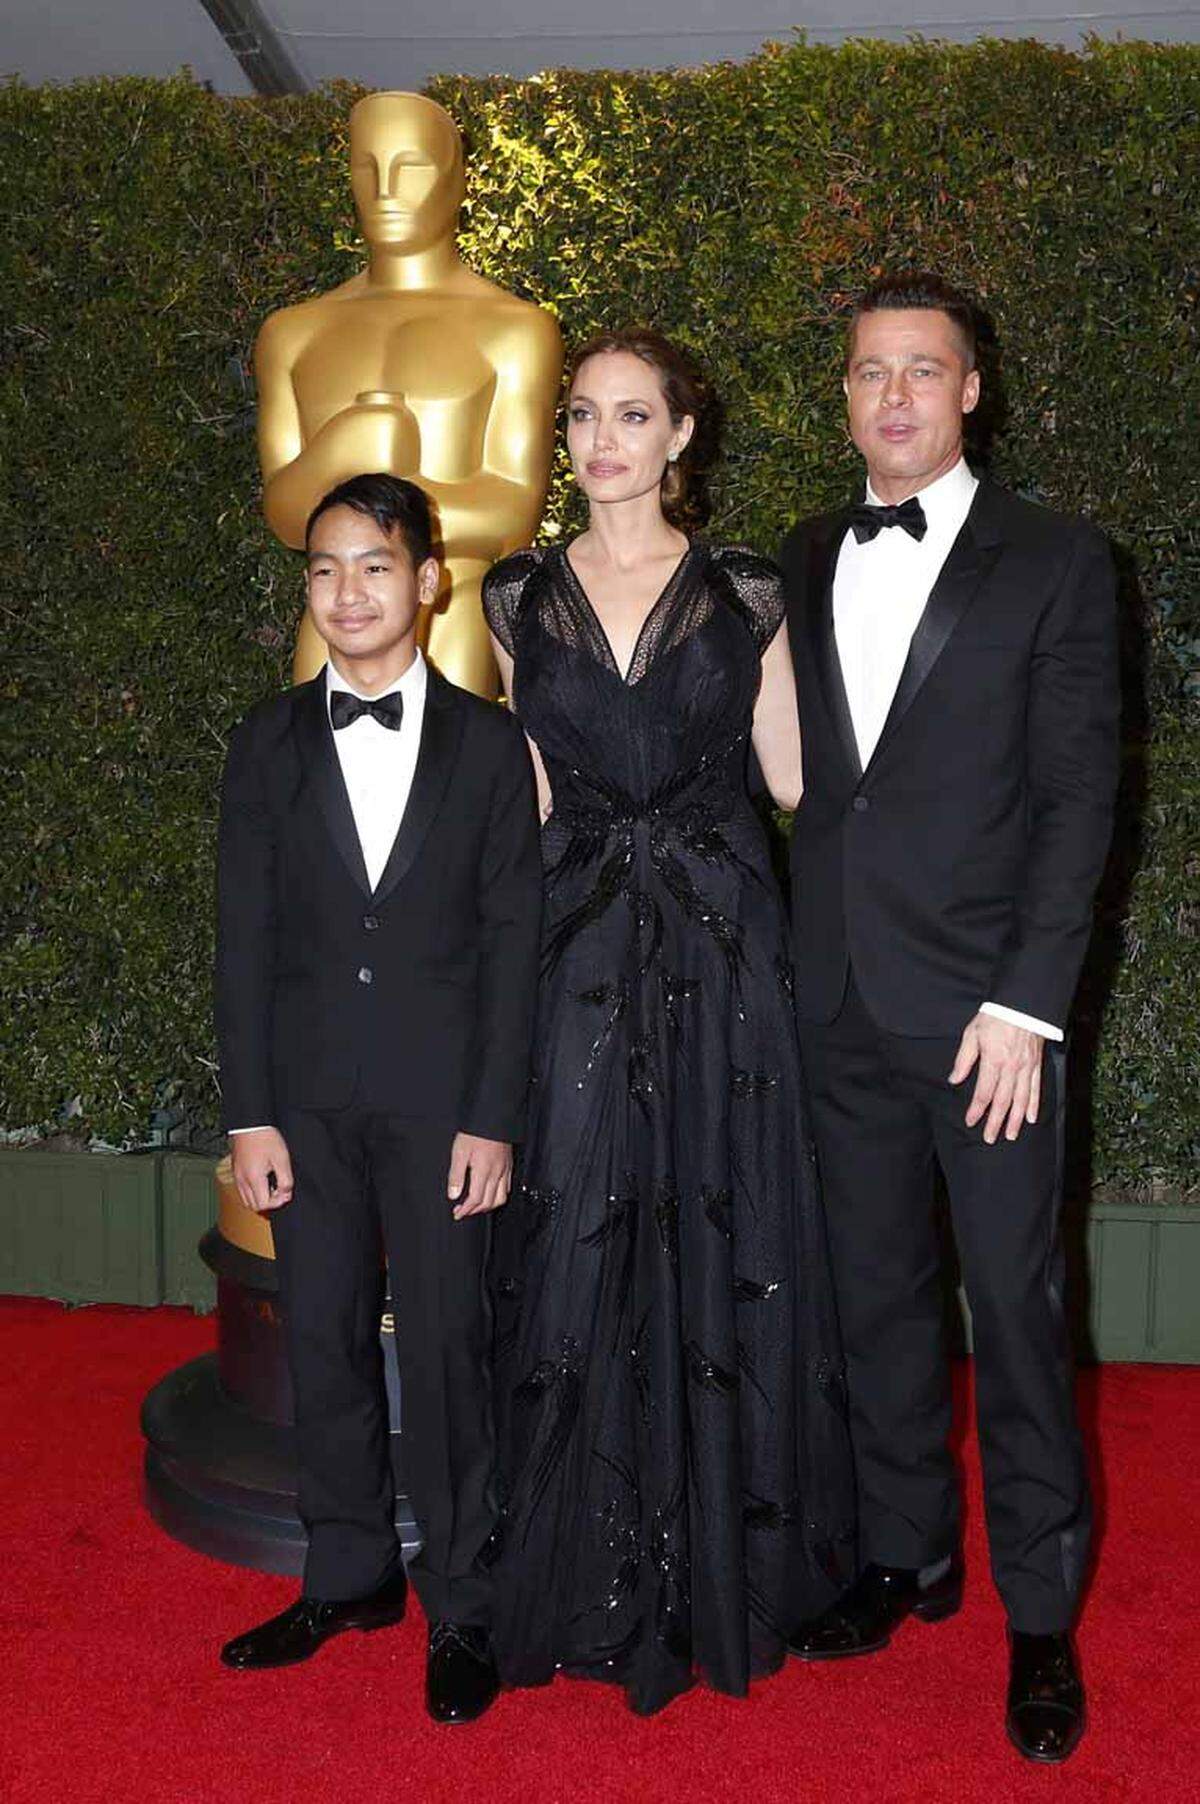 Maddox Jolie Pitt zeigte sich neben seinen Eltern Angelina Jolie und Brad Pitt ebenfalls schon ganz erwachsen auf dem roten Teppich. Das hat den Umfrage-Teilnehmern gefallen, er landete auf Platz 8.